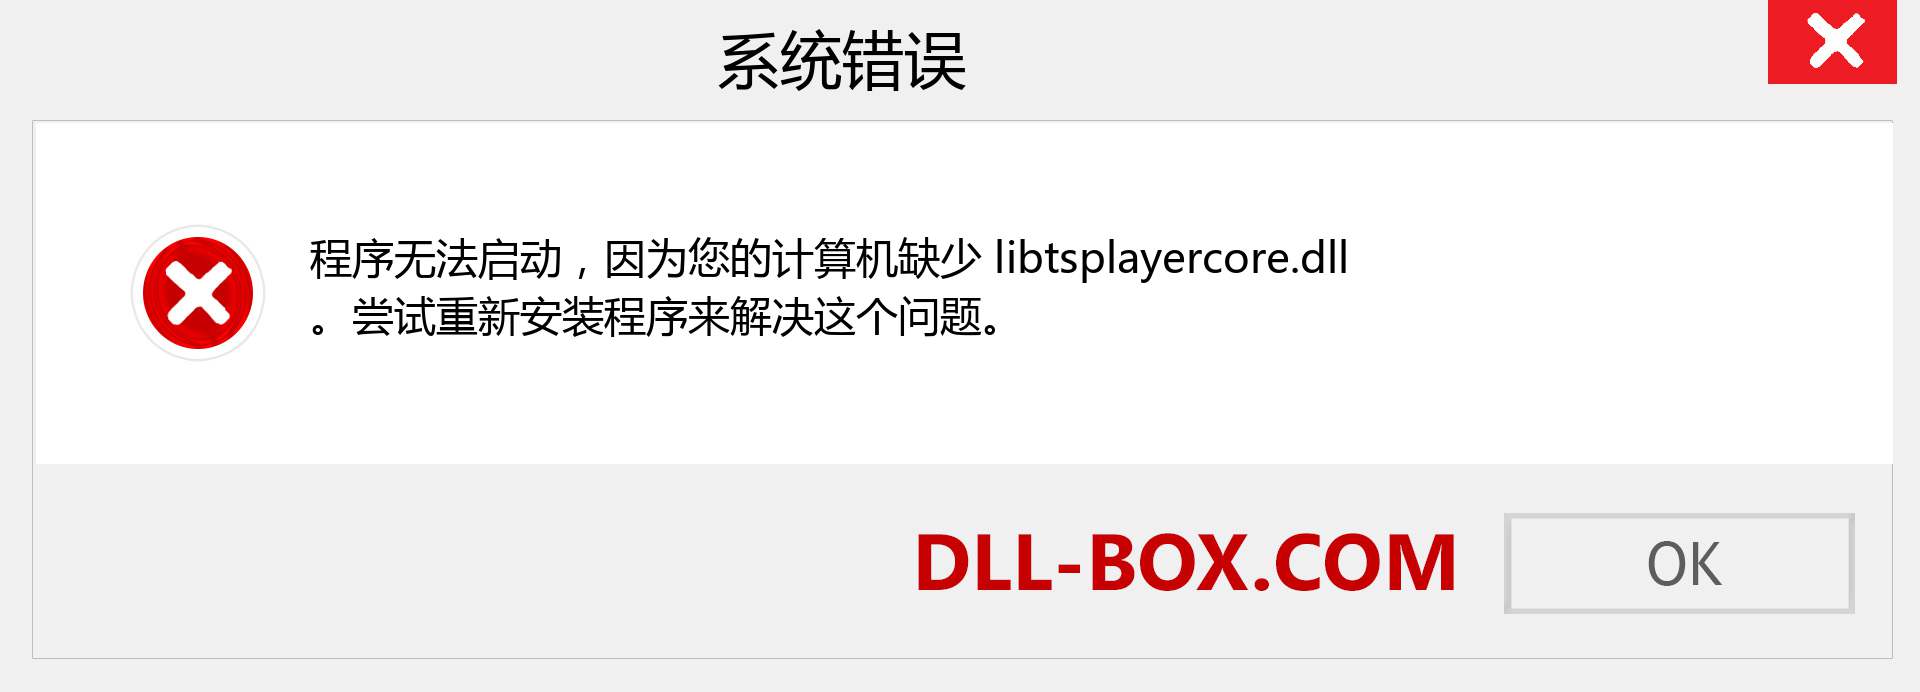 libtsplayercore.dll 文件丢失？。 适用于 Windows 7、8、10 的下载 - 修复 Windows、照片、图像上的 libtsplayercore dll 丢失错误